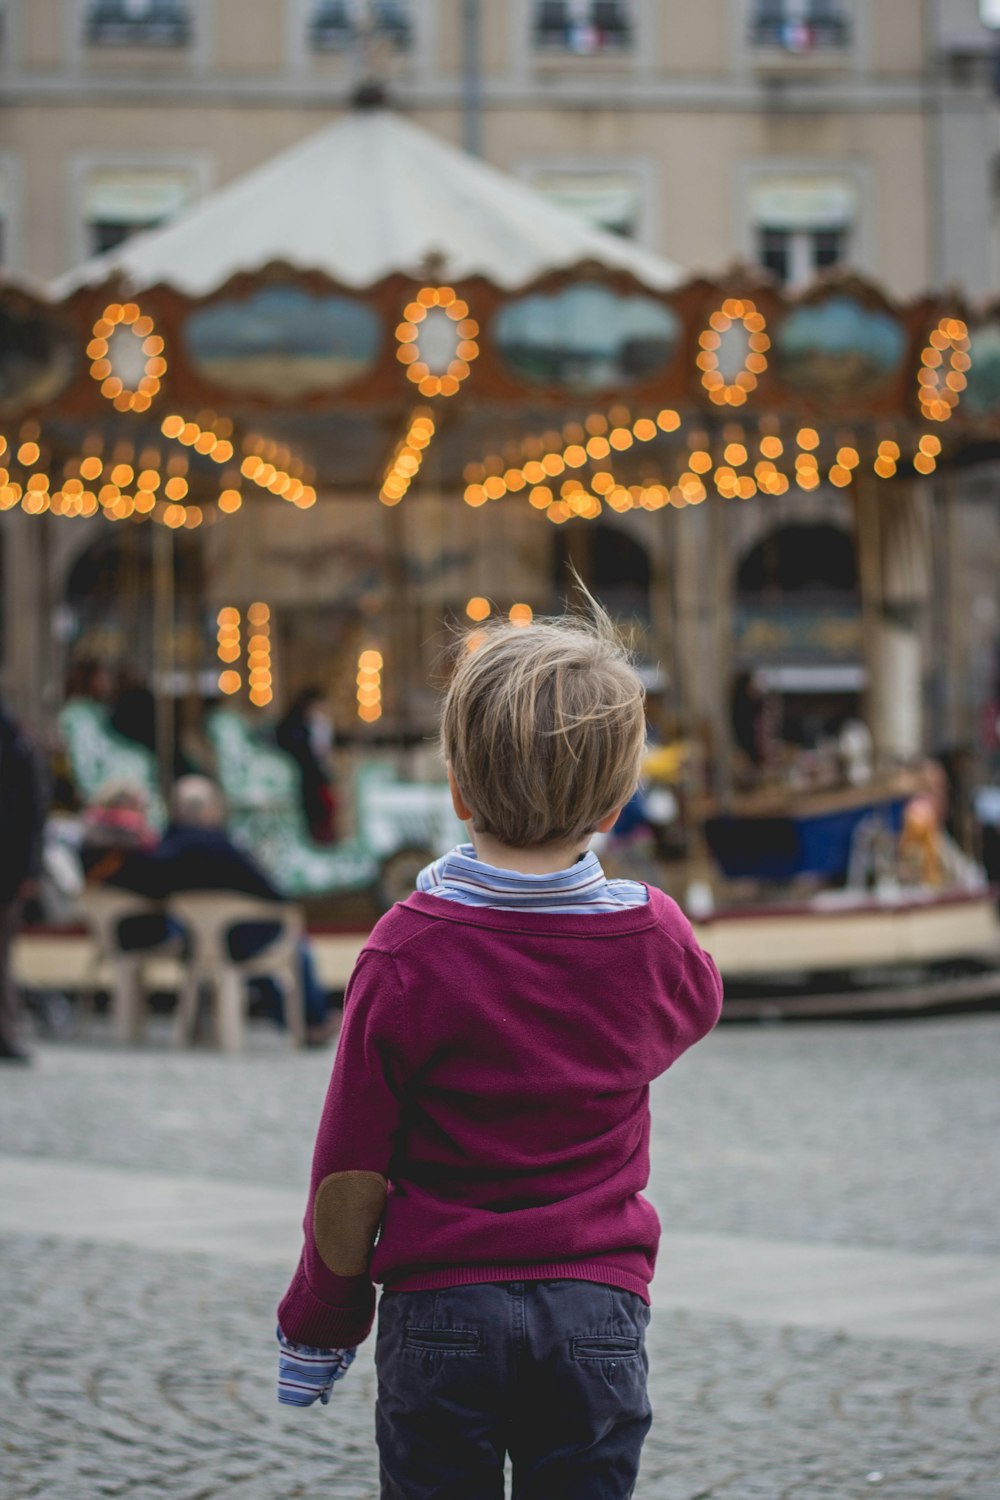 Photographie sélective de mise au point d’un garçon debout devant le carrousel